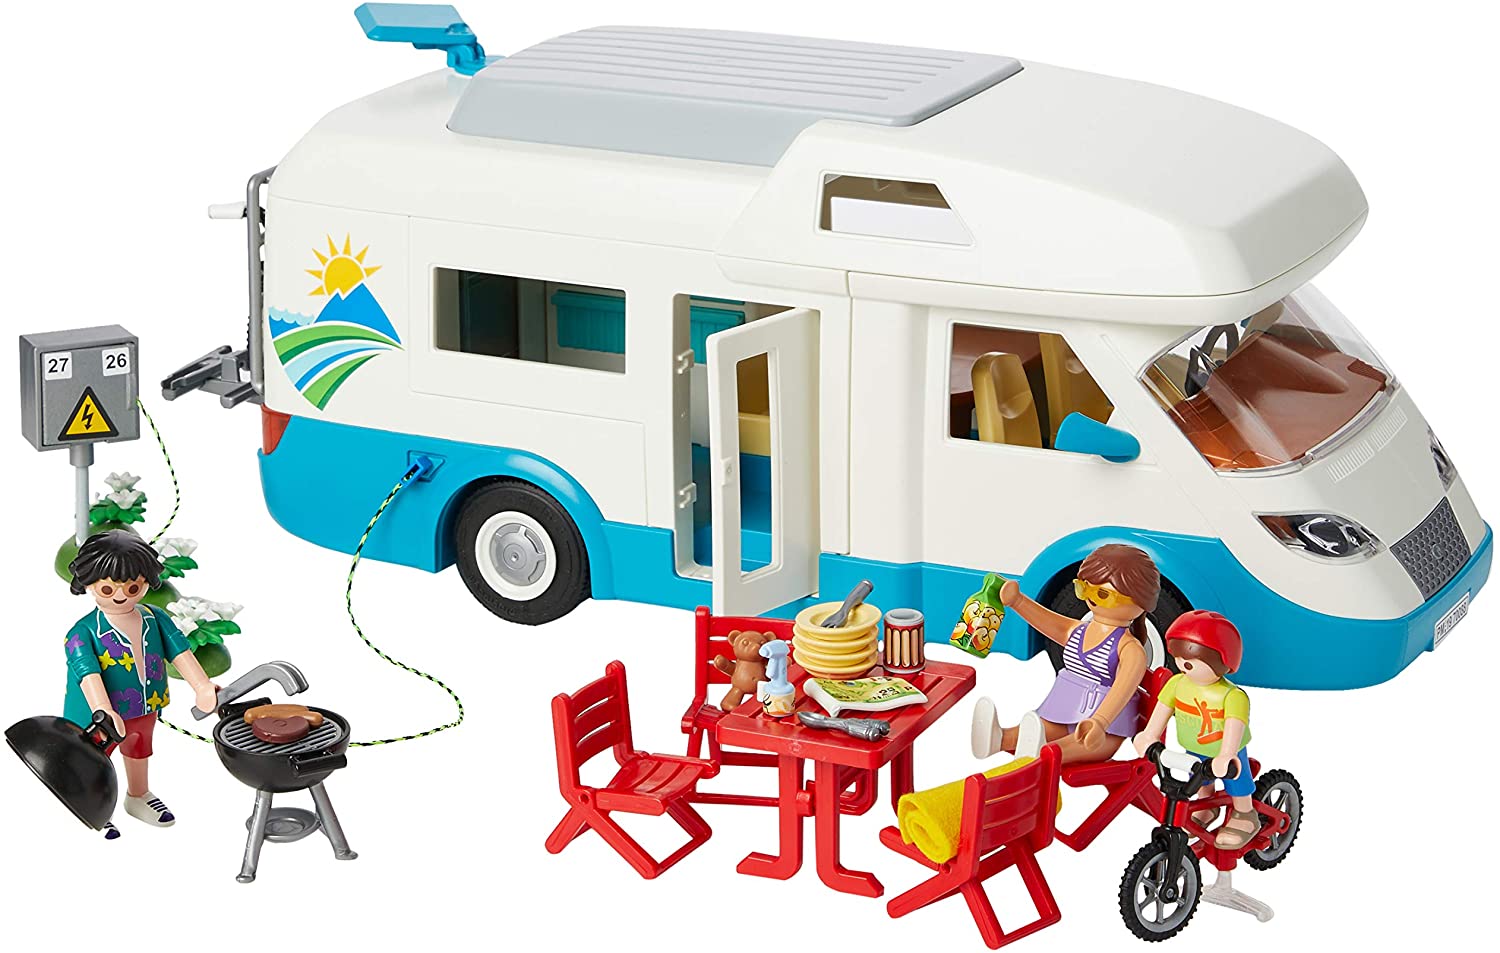 camper playmobil